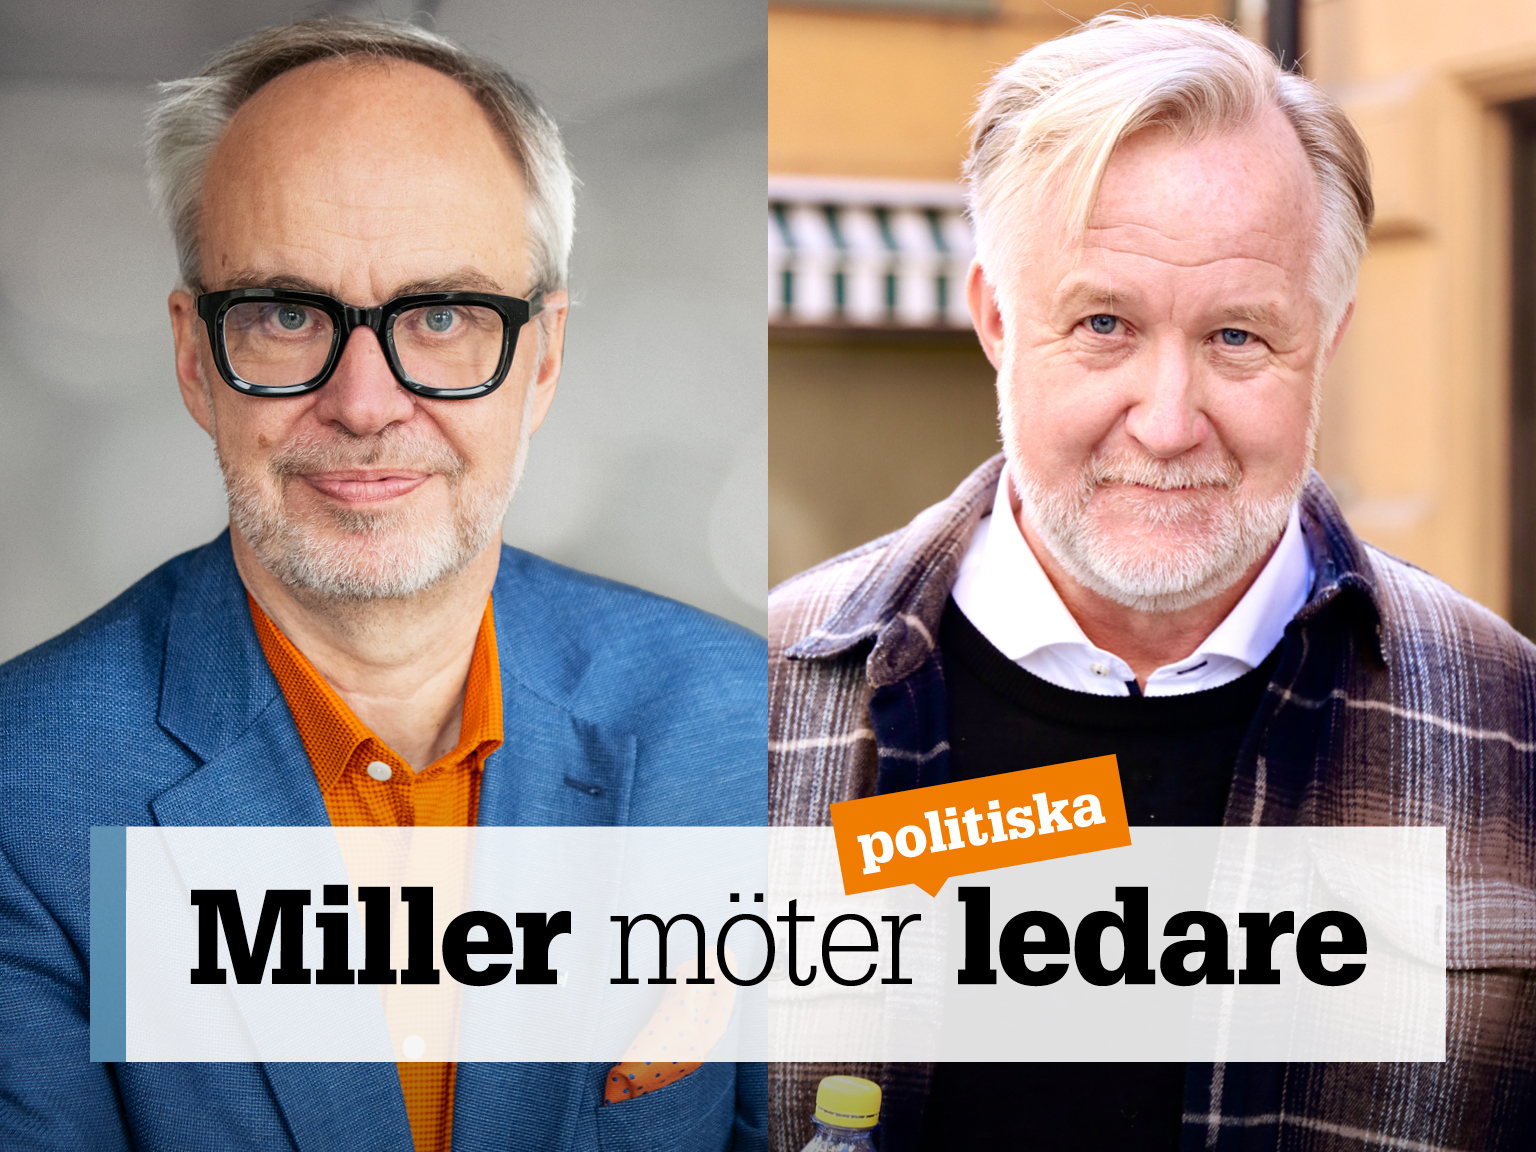 Omslag för podden Miller möter ledare – bild på Andreas Miller och Johan Pehrson.